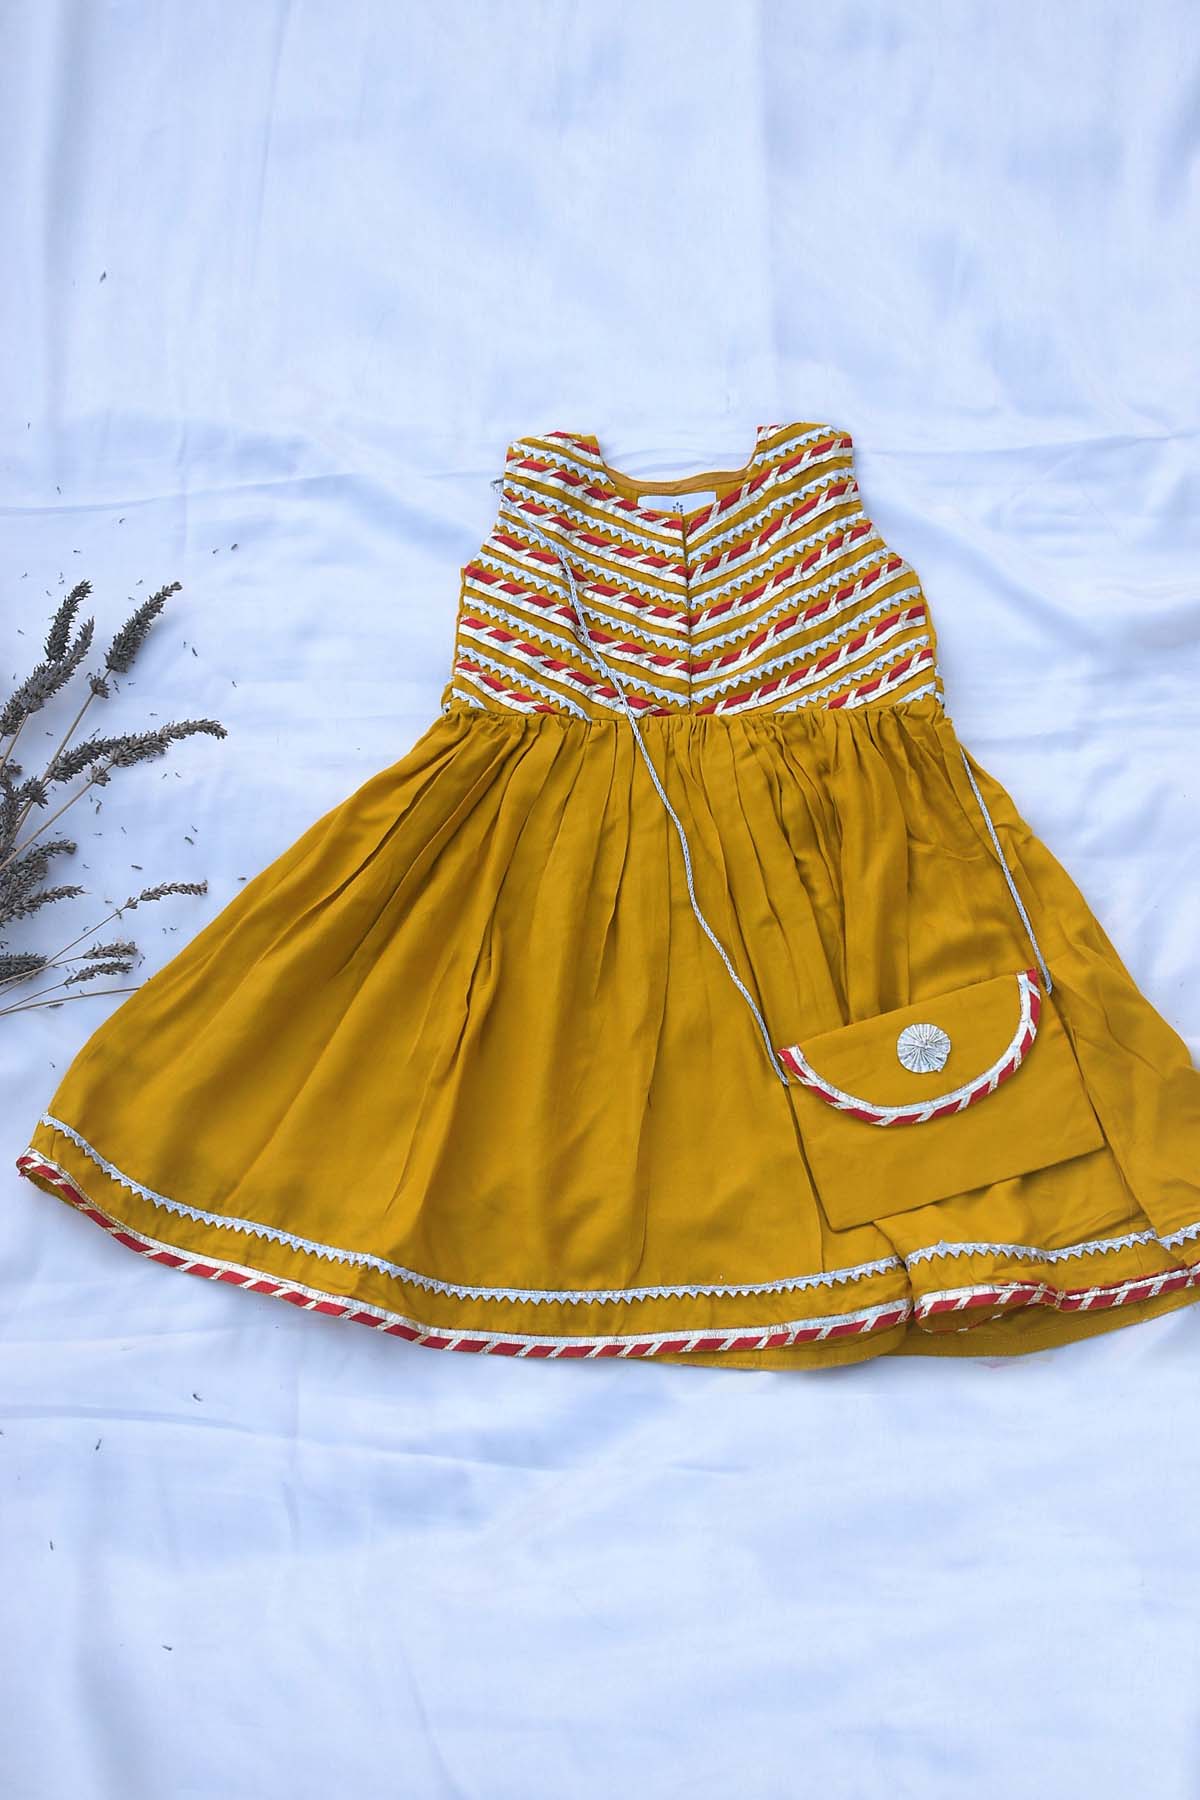 Designer ViYa Mustard Cotton Embellished Dress For Kids Available online at ScrollnShops